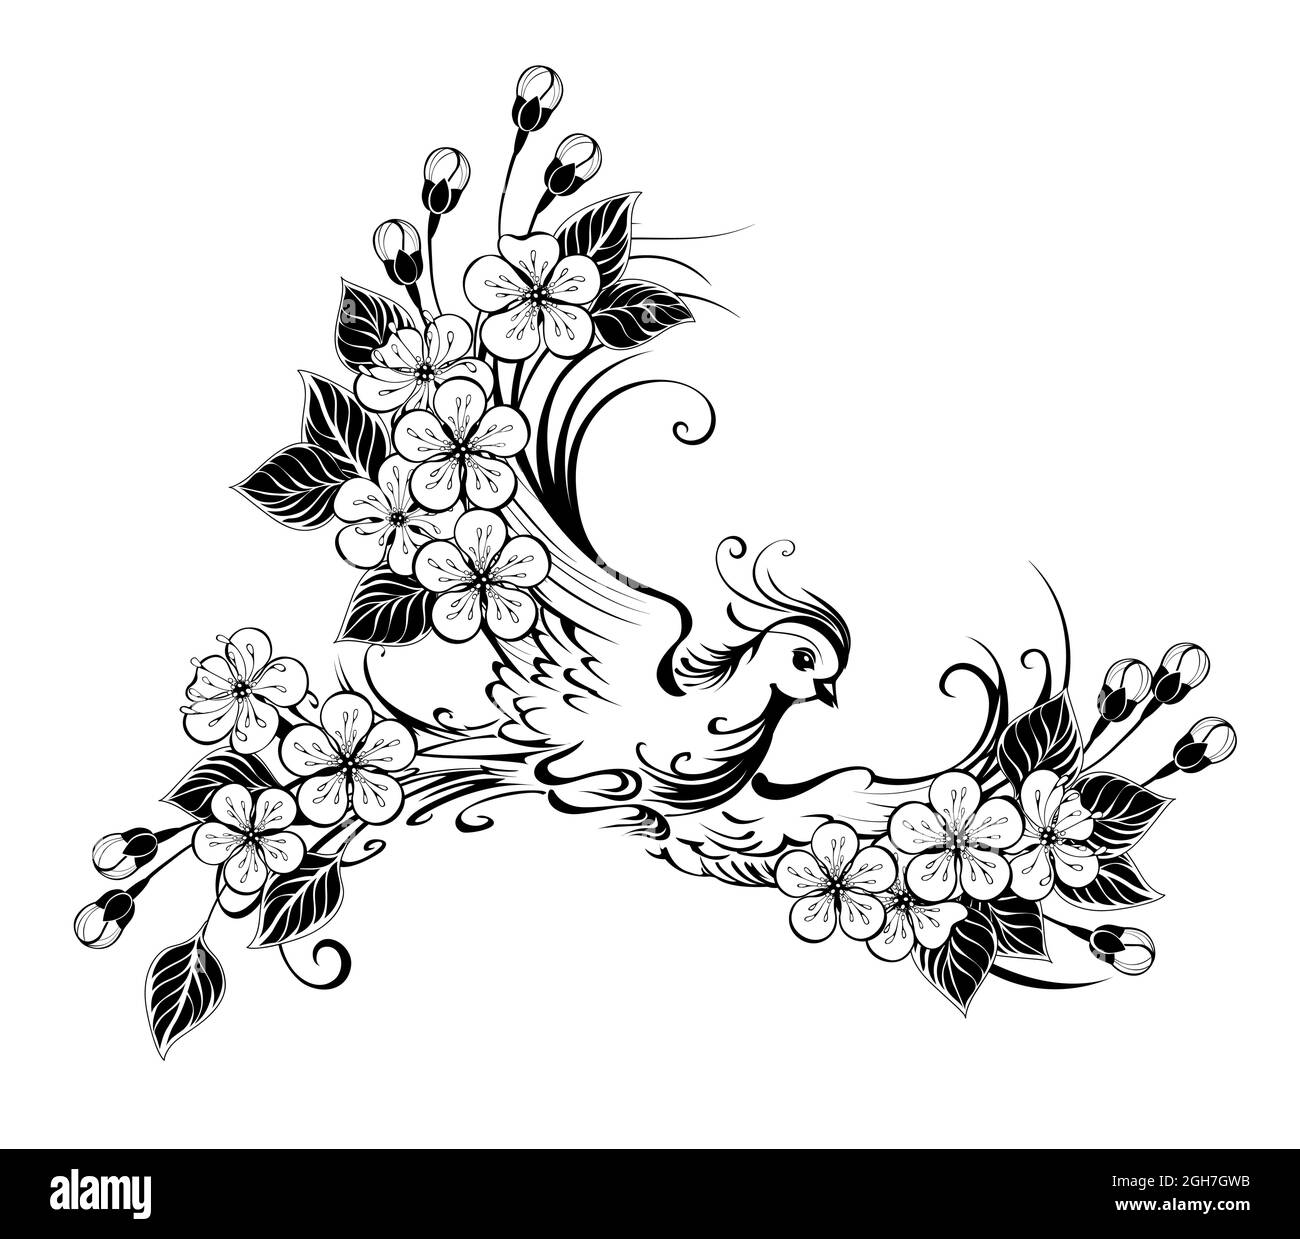 Artistiquement dessiné, contour, oiseau volant avec des ailes décorées de fleurs sur fond blanc. Illustration de Vecteur